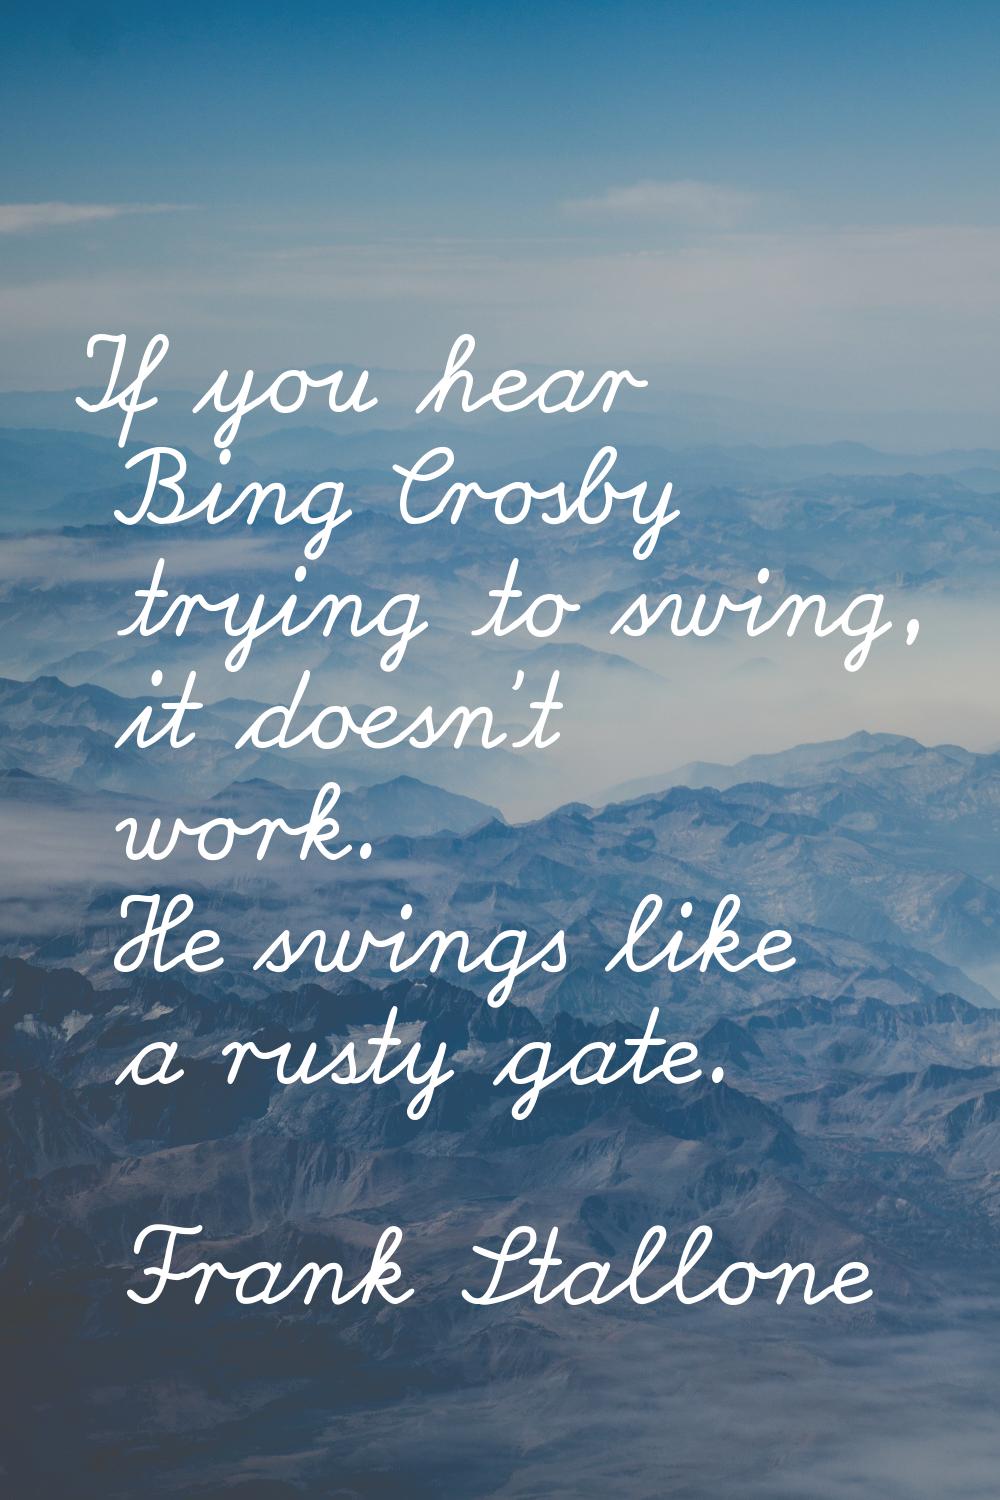 If you hear Bing Crosby trying to swing, it doesn't work. He swings like a rusty gate.